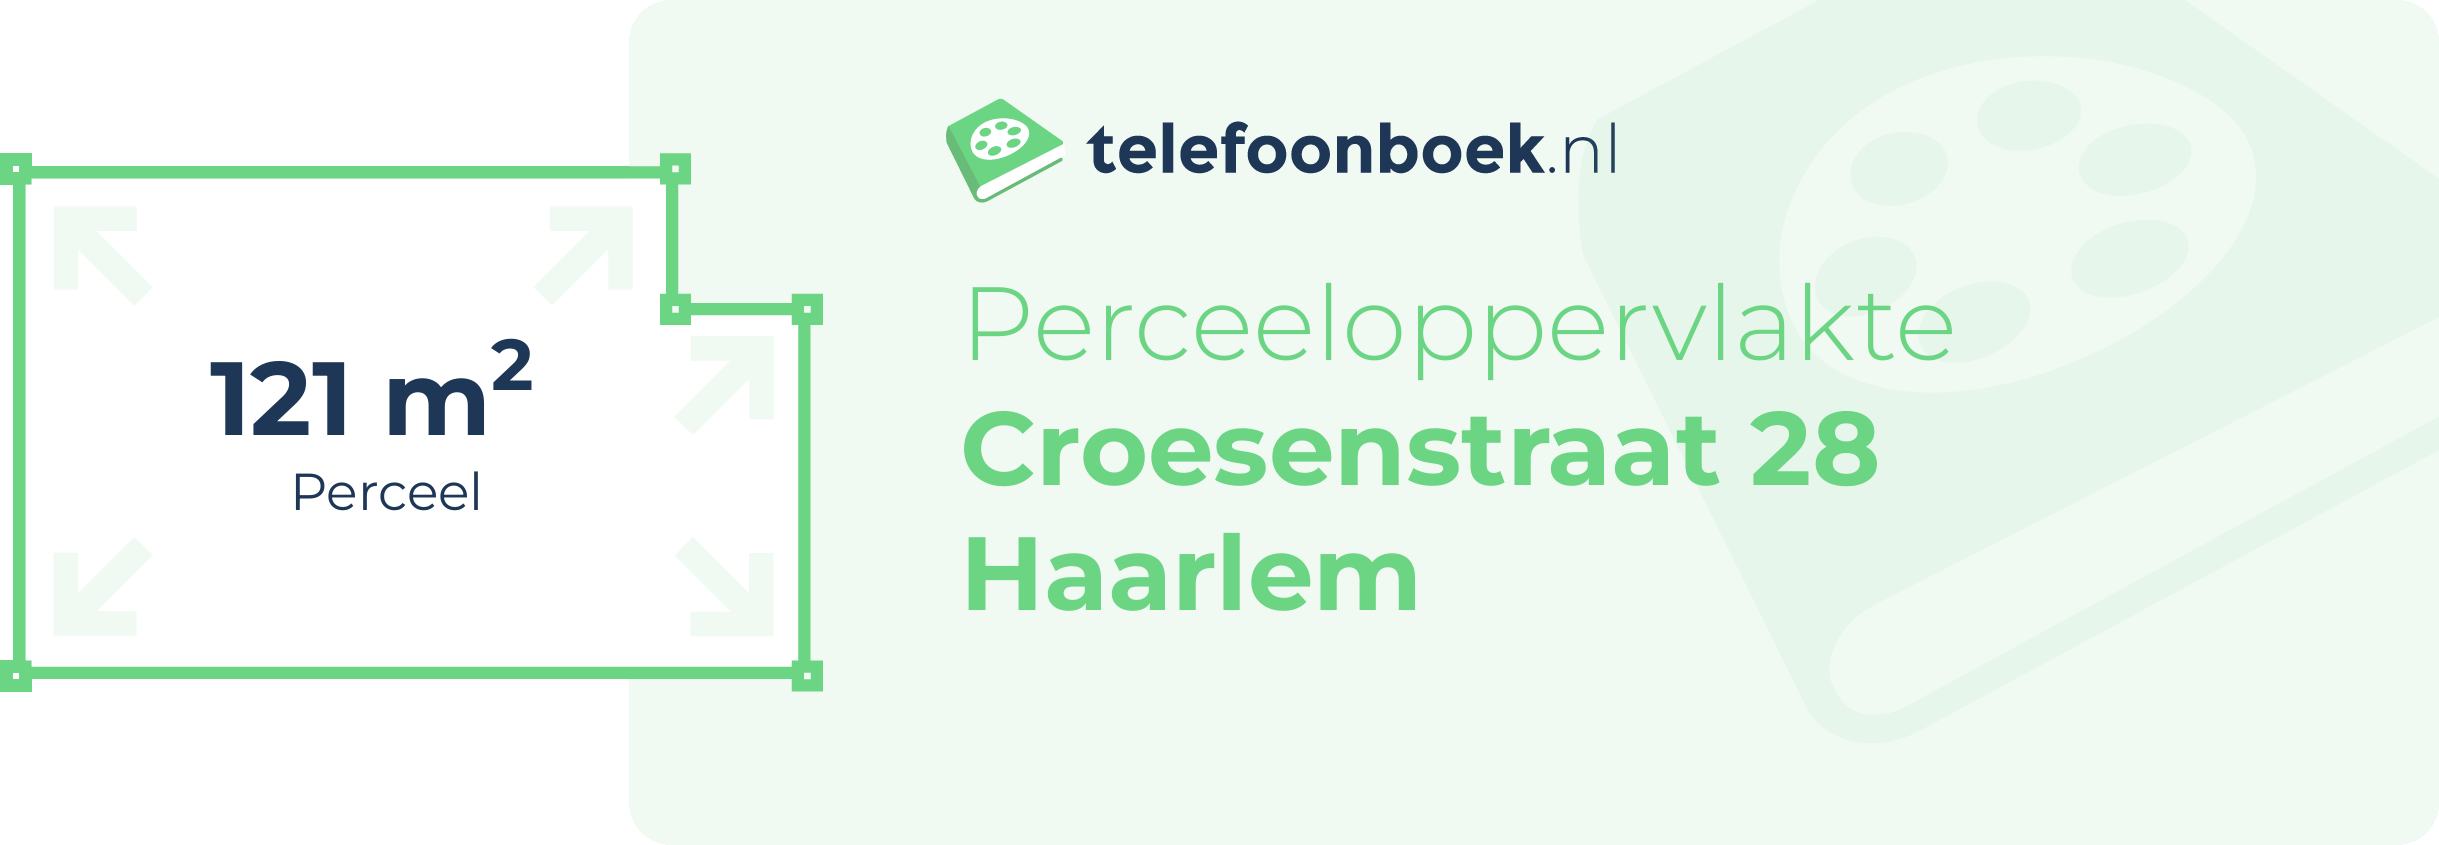 Perceeloppervlakte Croesenstraat 28 Haarlem